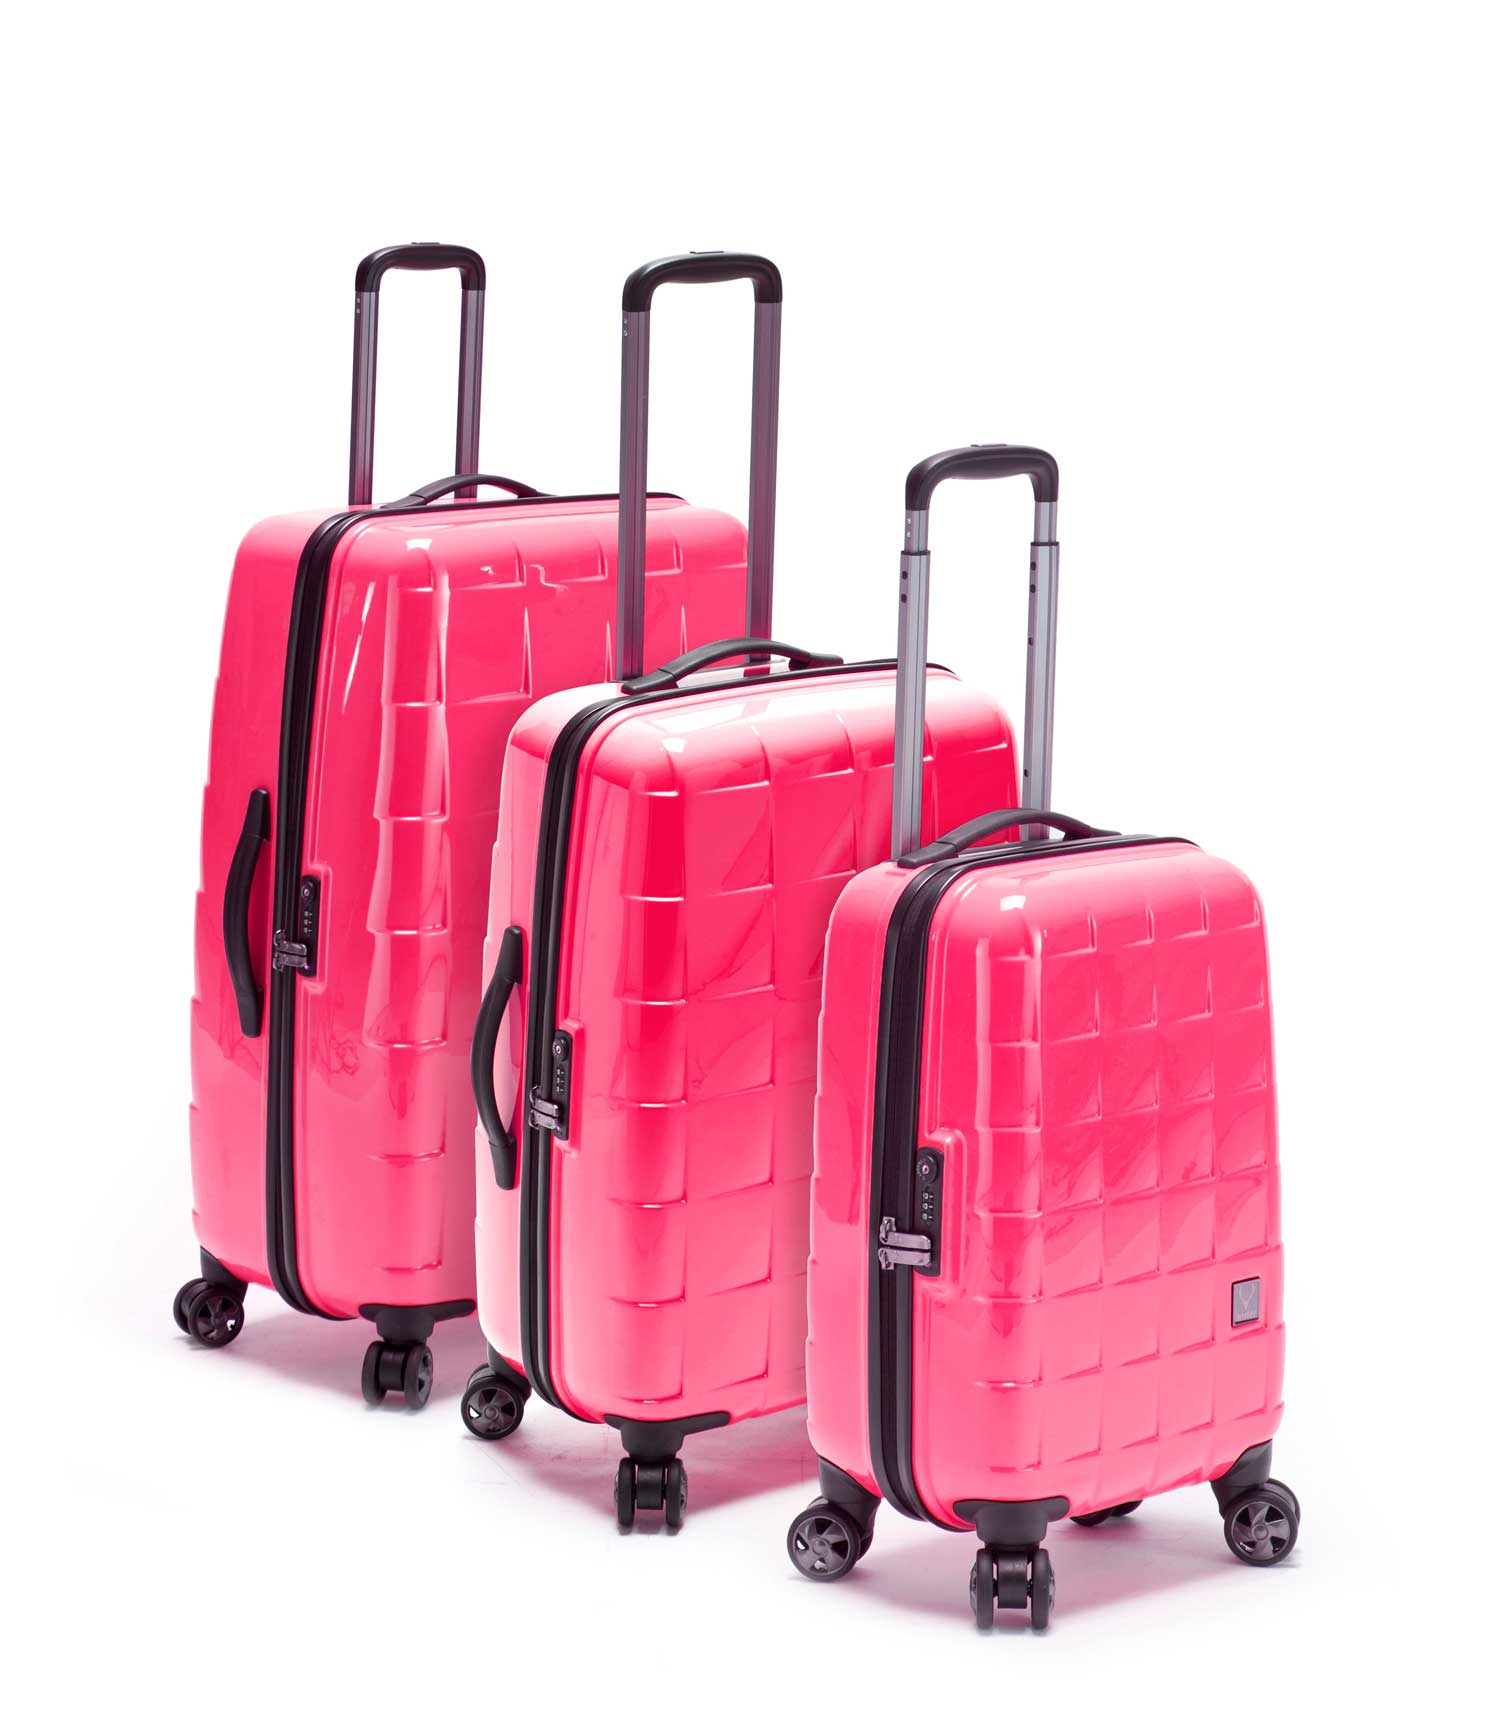 Antler duolite 3 piece luggage set lyrics, maximum carry on bag size ...